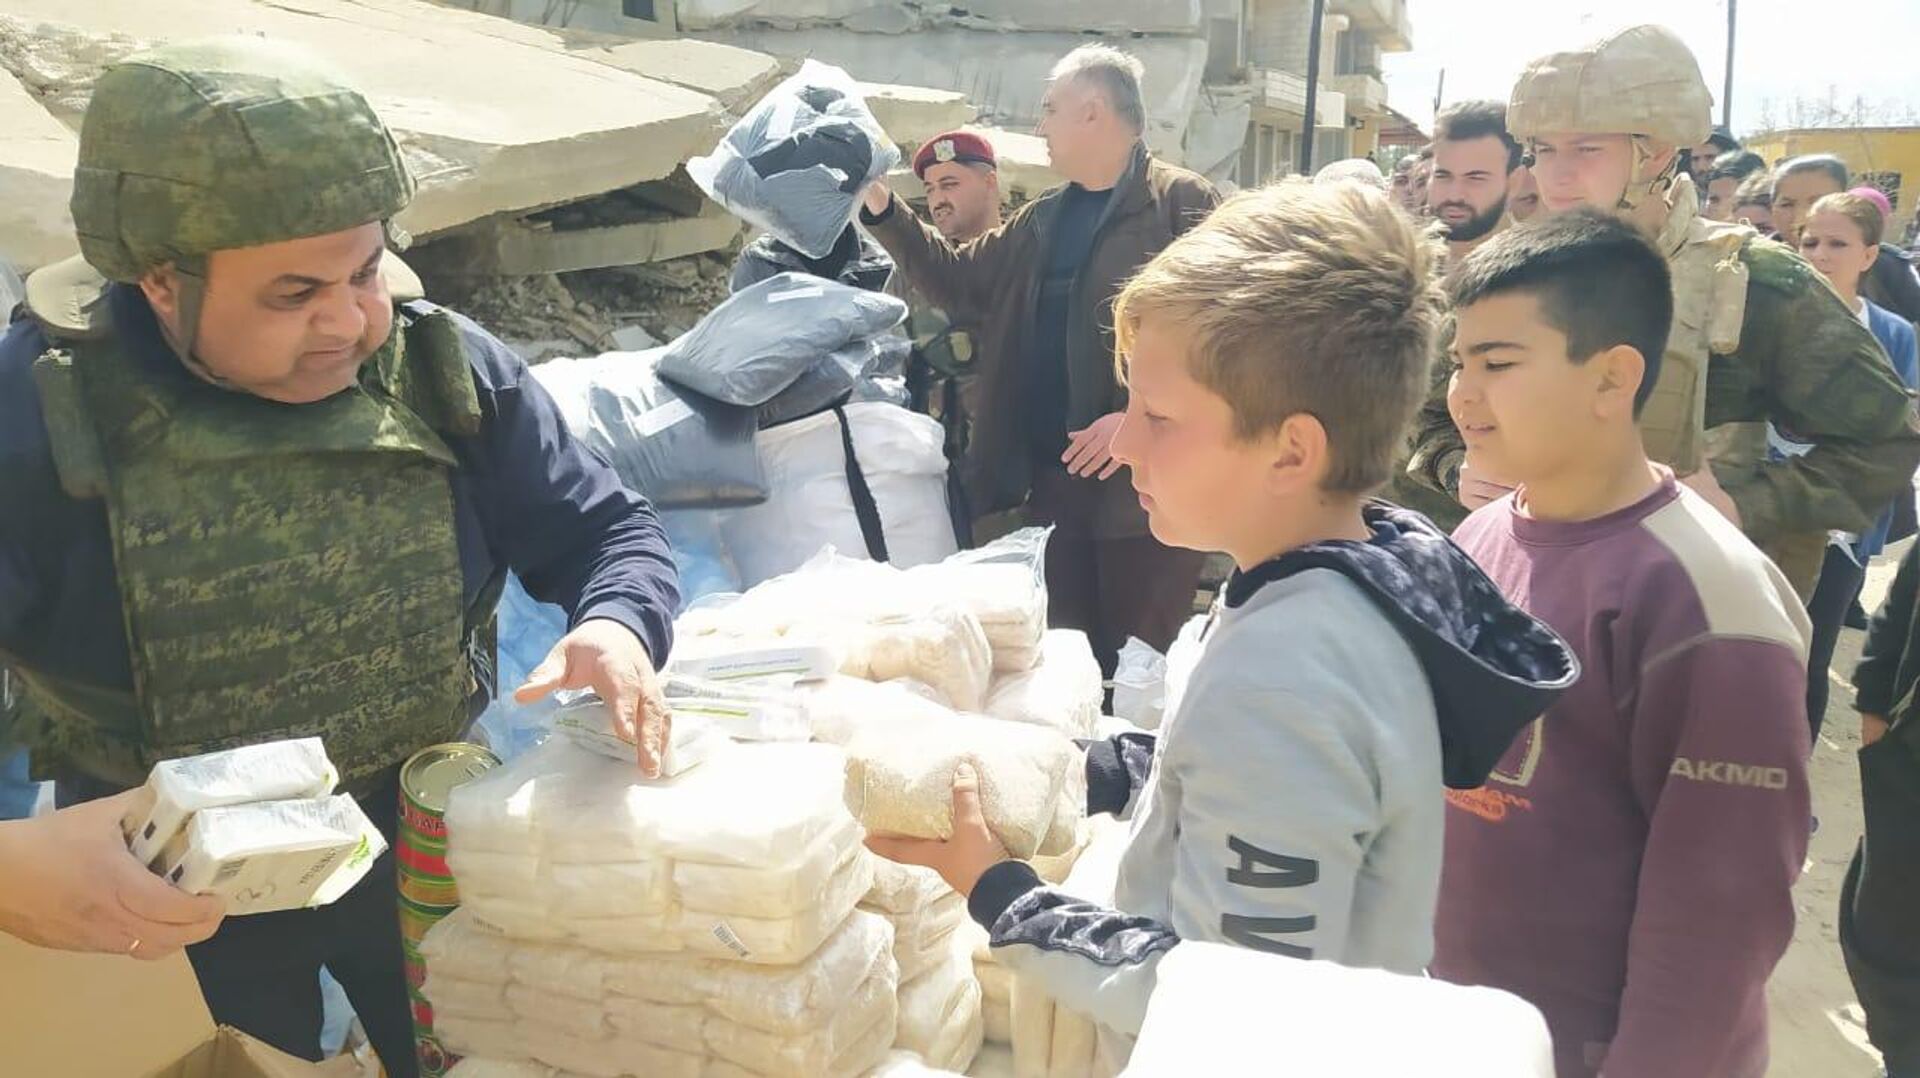 سبوتنيك توزع مساعدات إنسانية في المناطق المتضررة من الزلزال في سوريا - سبوتنيك عربي, 1920, 14.03.2023